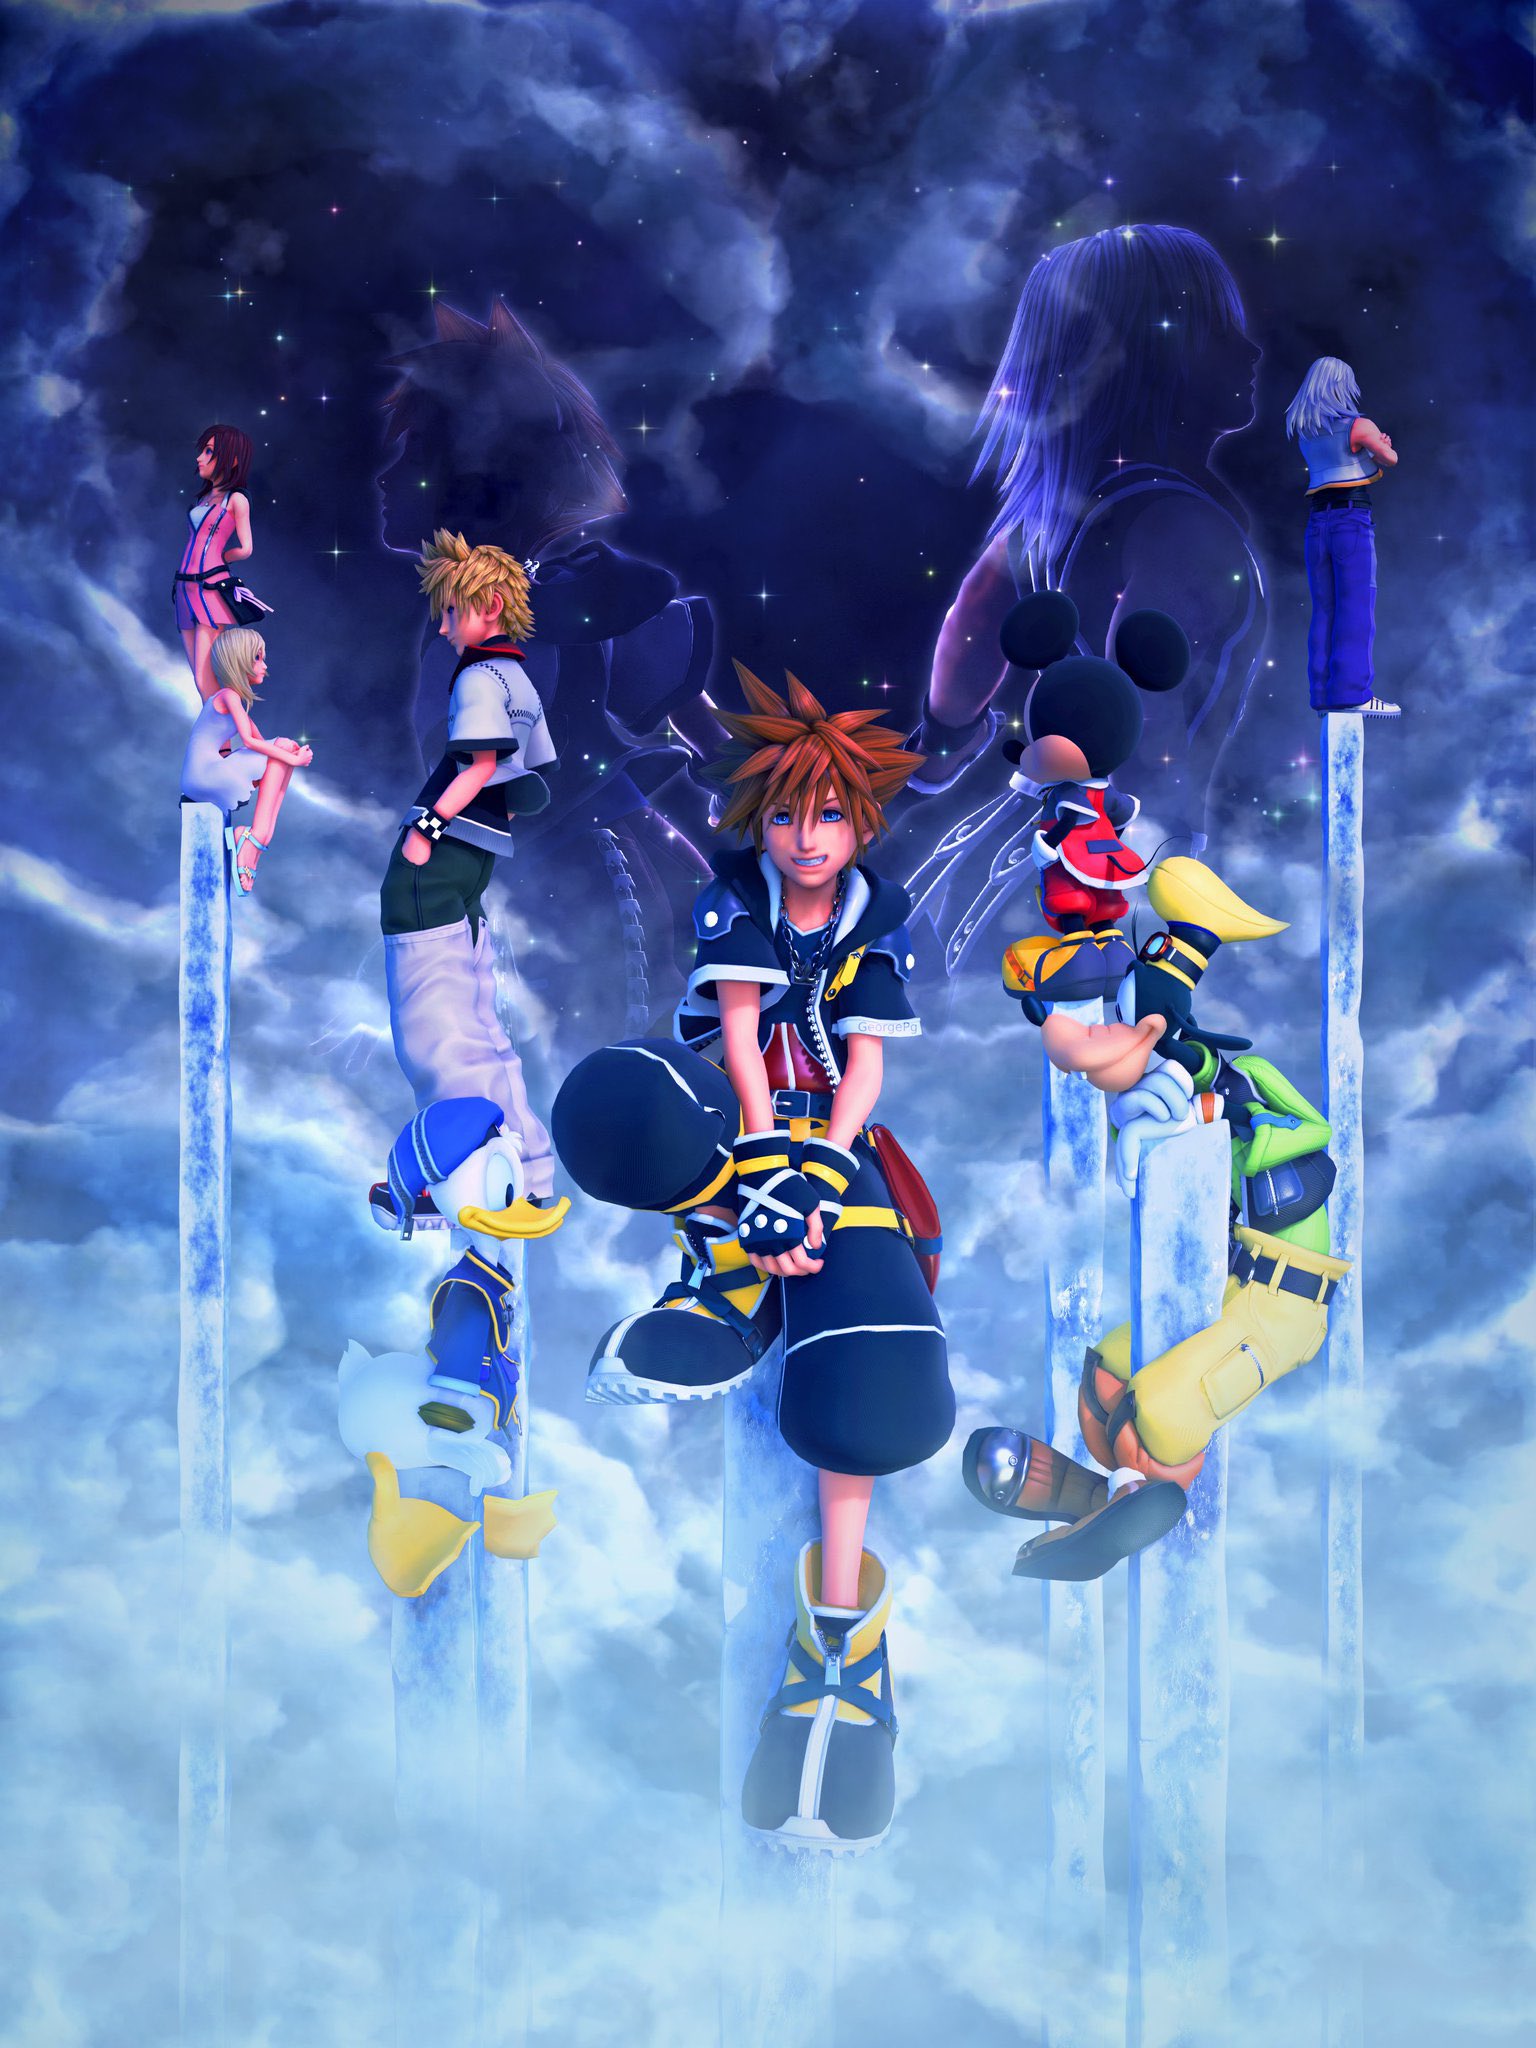 Kingdom Hearts llegará a PC el 13 de junio 6